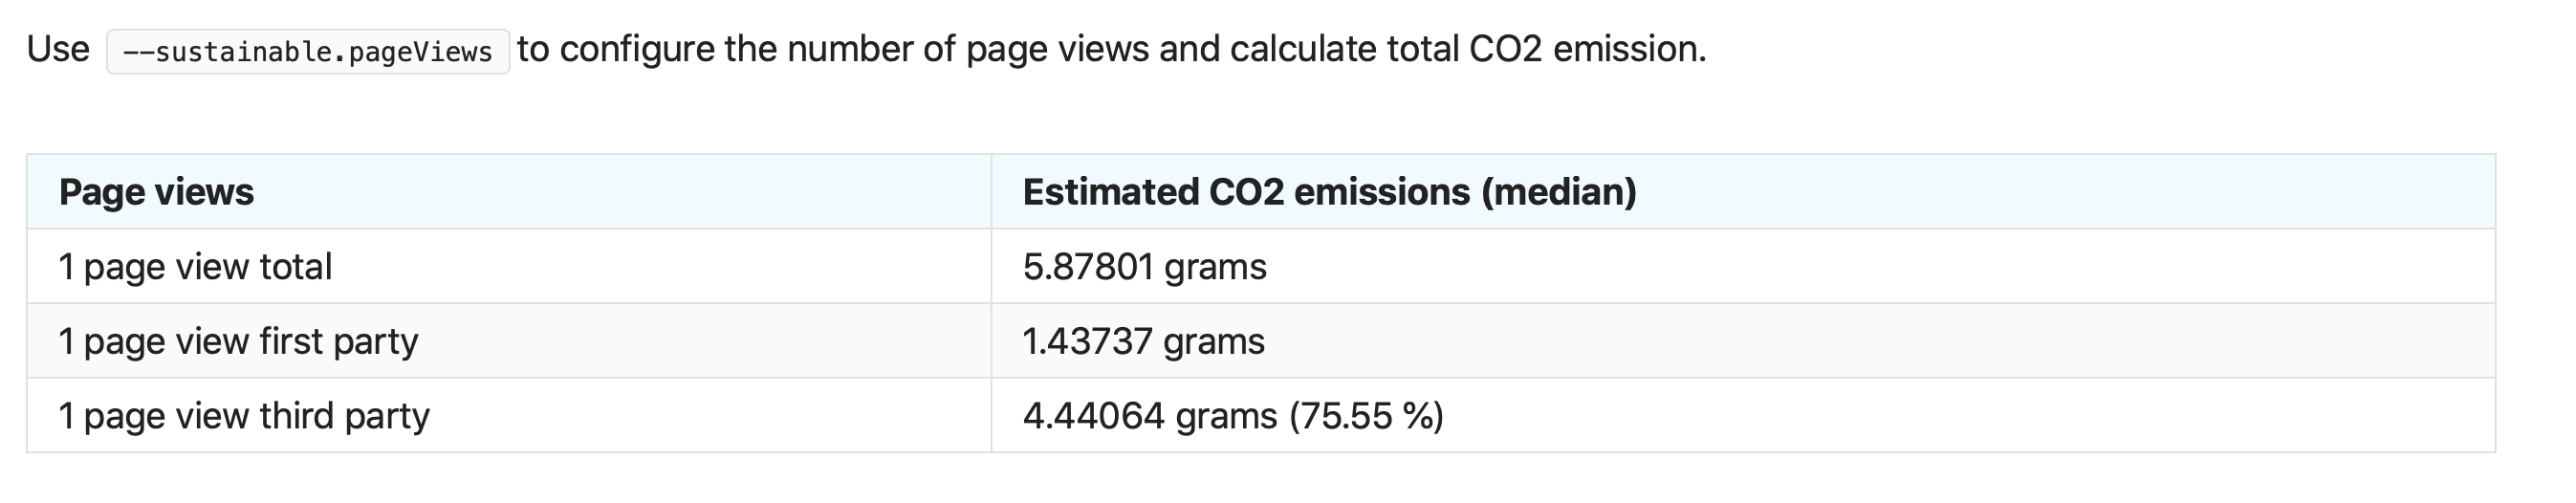 Estimated carbon emission per page view